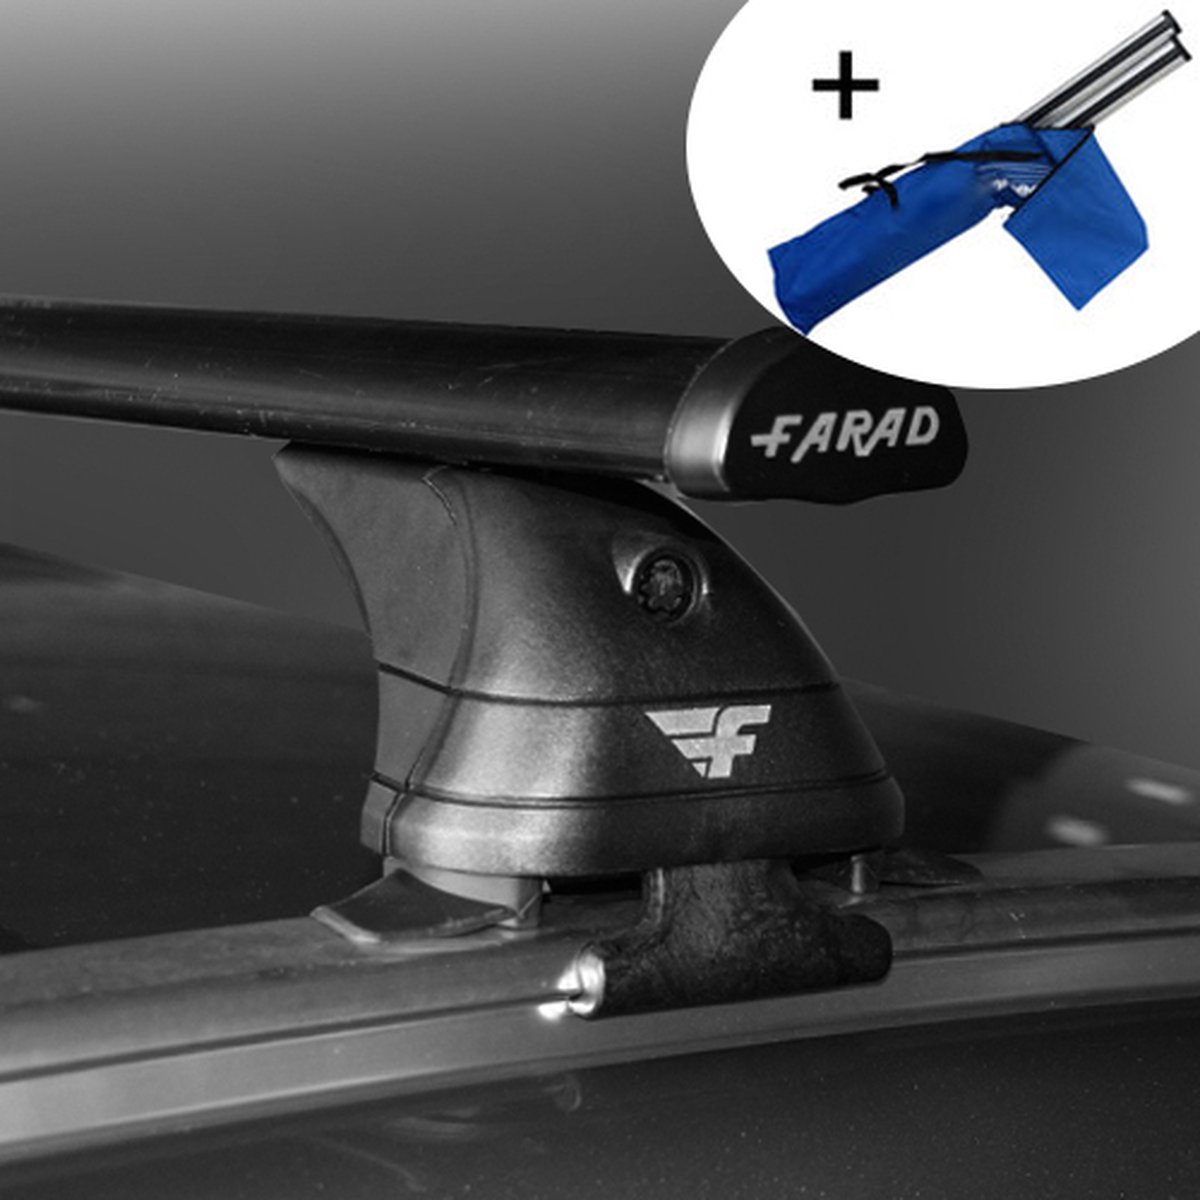 Dakdragers geschikt voor Mini Cooper 5 deurs hatchback vanaf 2014 - Staal - inclusief dakdrager opbergtas